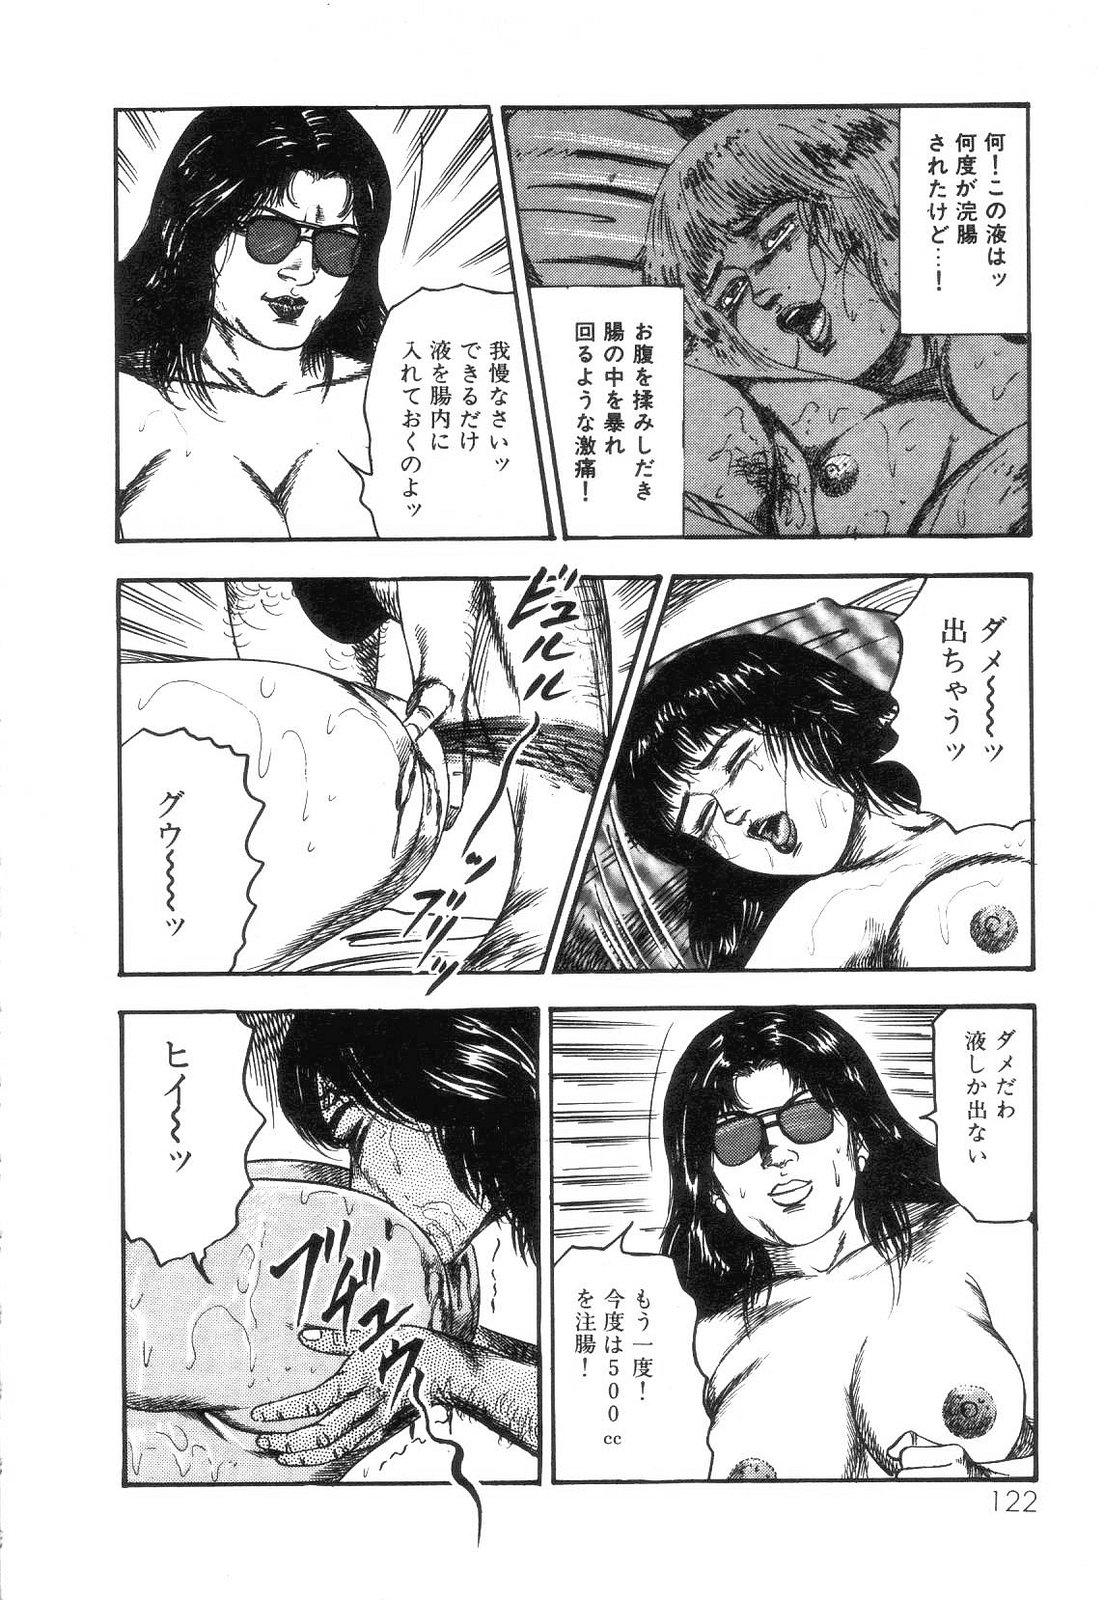 Shiro no Mokushiroku Vol. 4 - Bichiku Karen no Shou 123